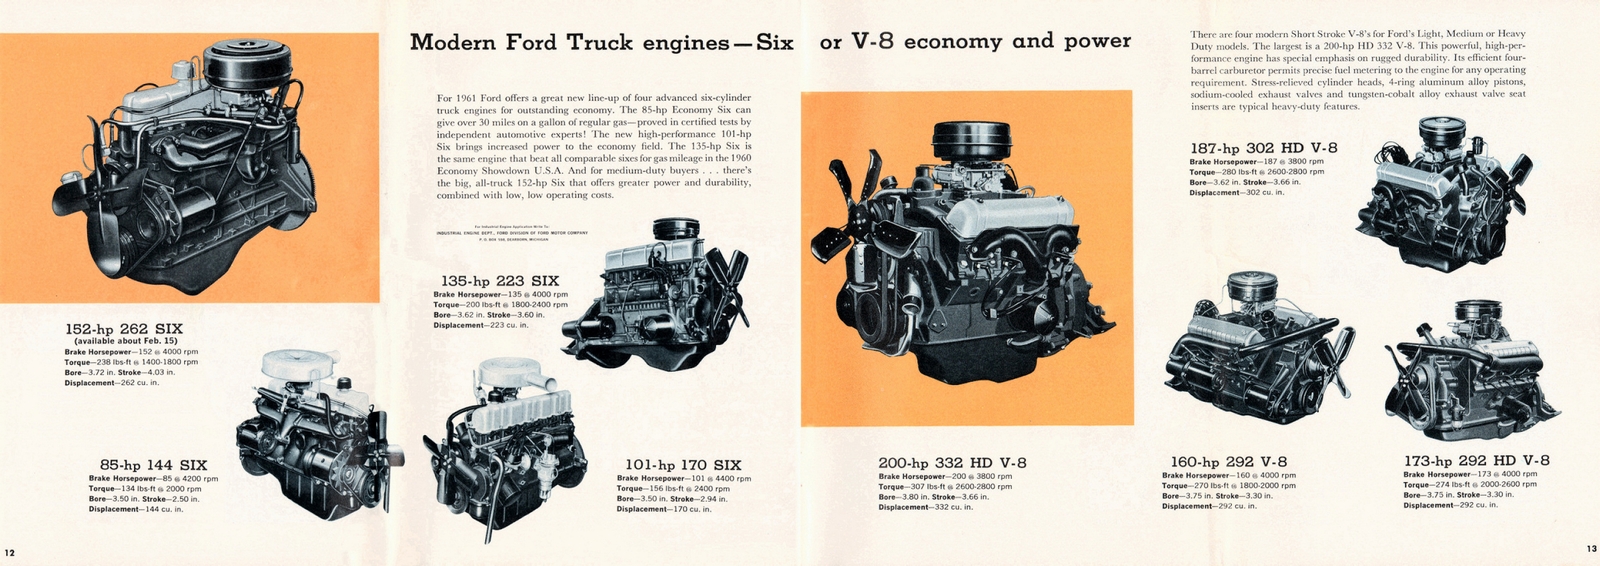 n_1961 Ford Truck Full Line-12-13.jpg